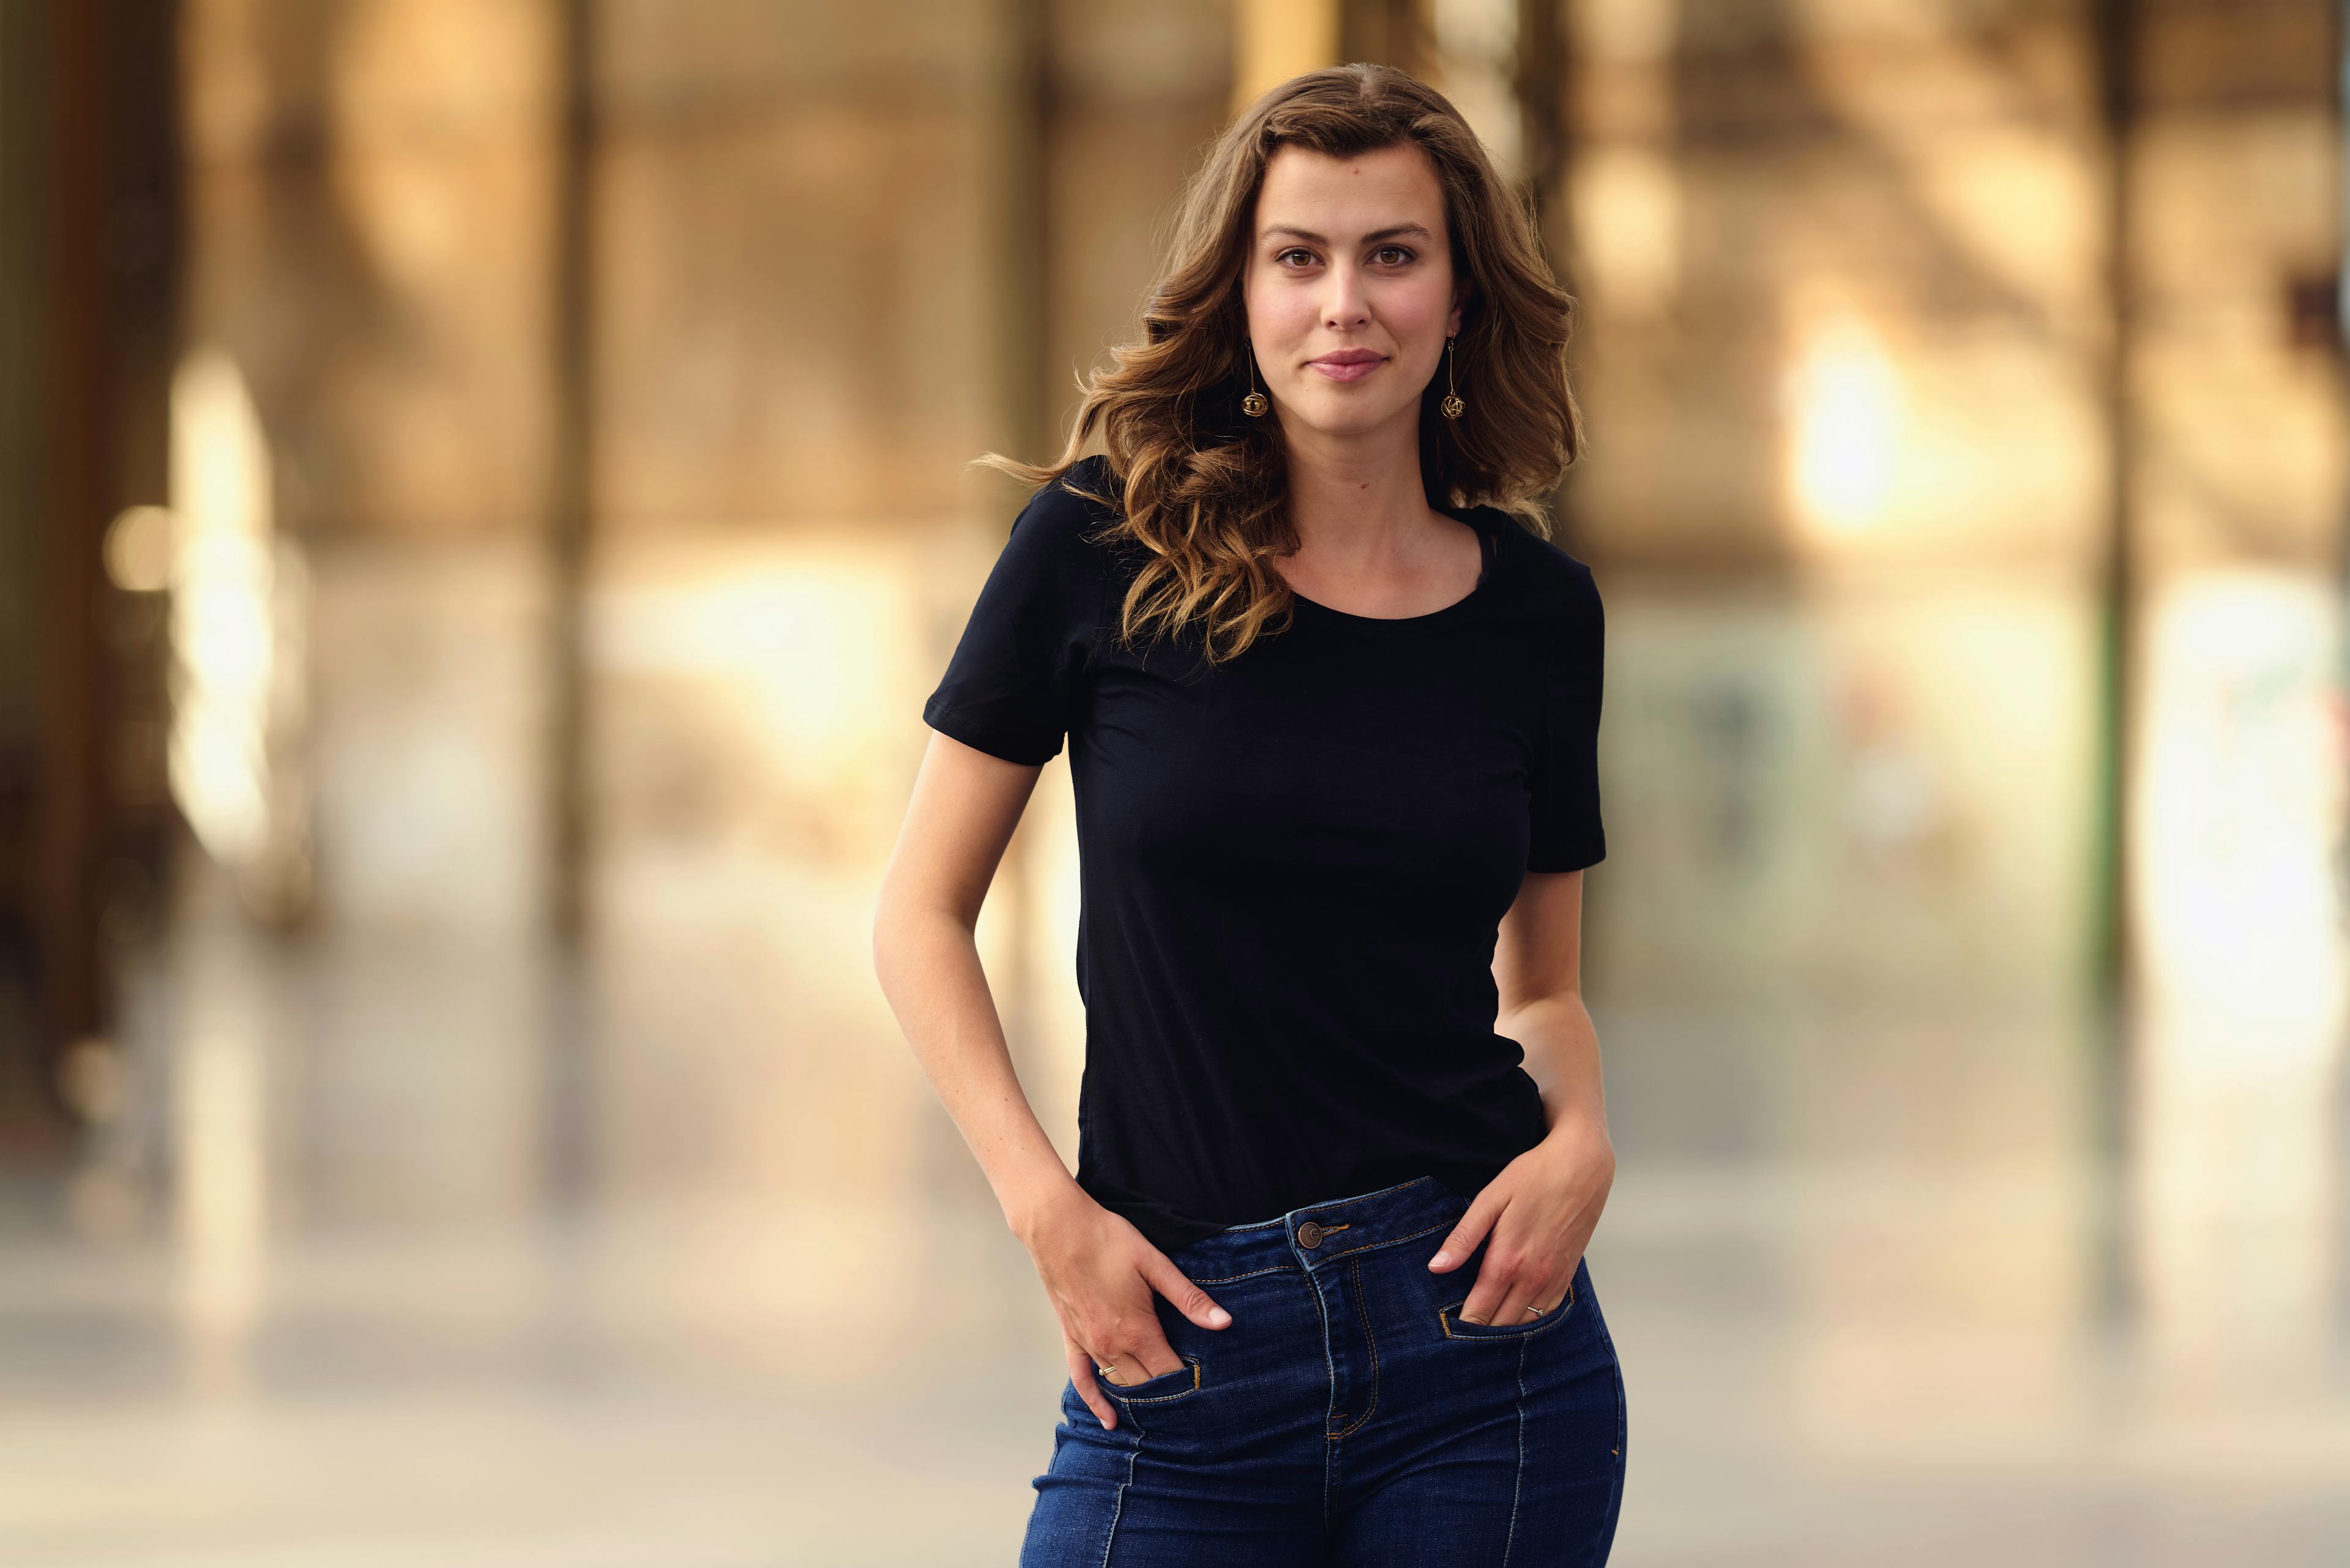 Sophie Kuijpers poserend in zwart shirt met handen in zakken